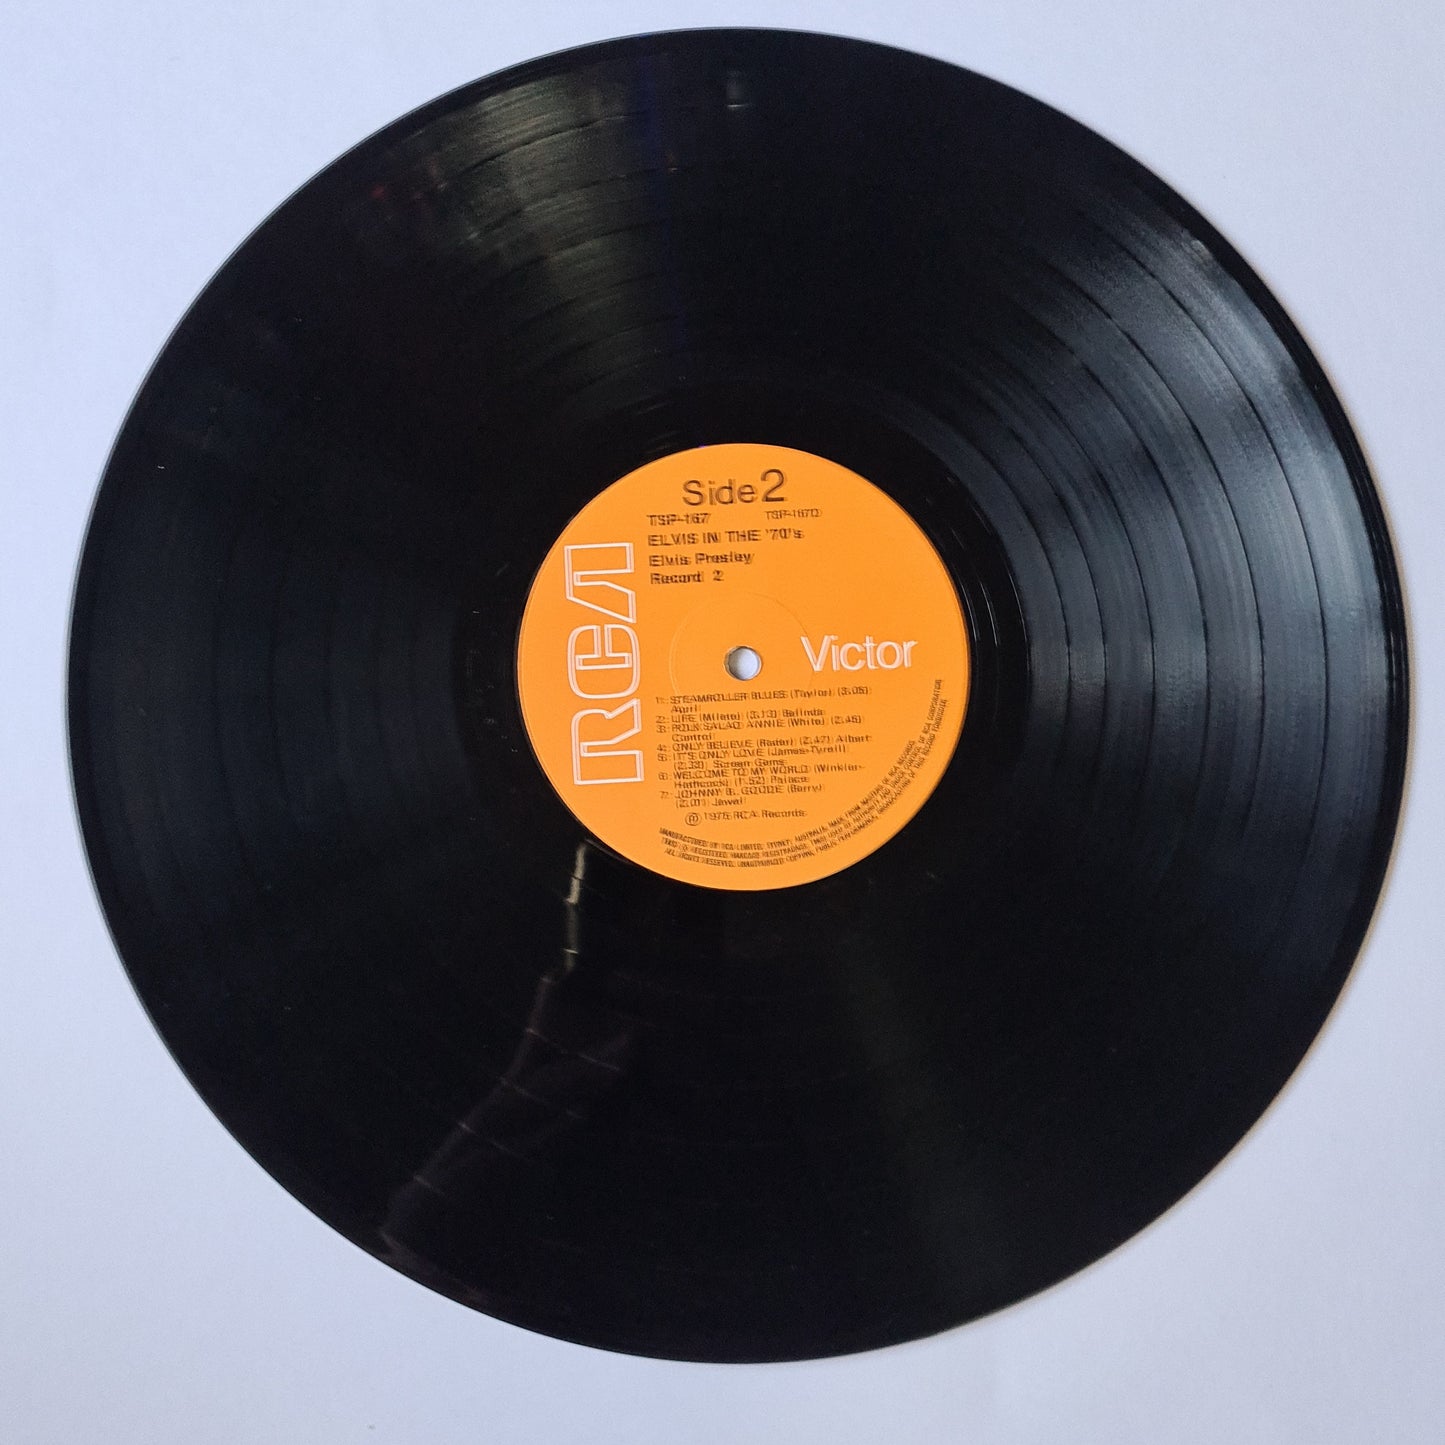 Elvis Presley – Elvis In The 70's: 28 Great Songs - 1975 (2LP Gatefold) - Vinyl Record